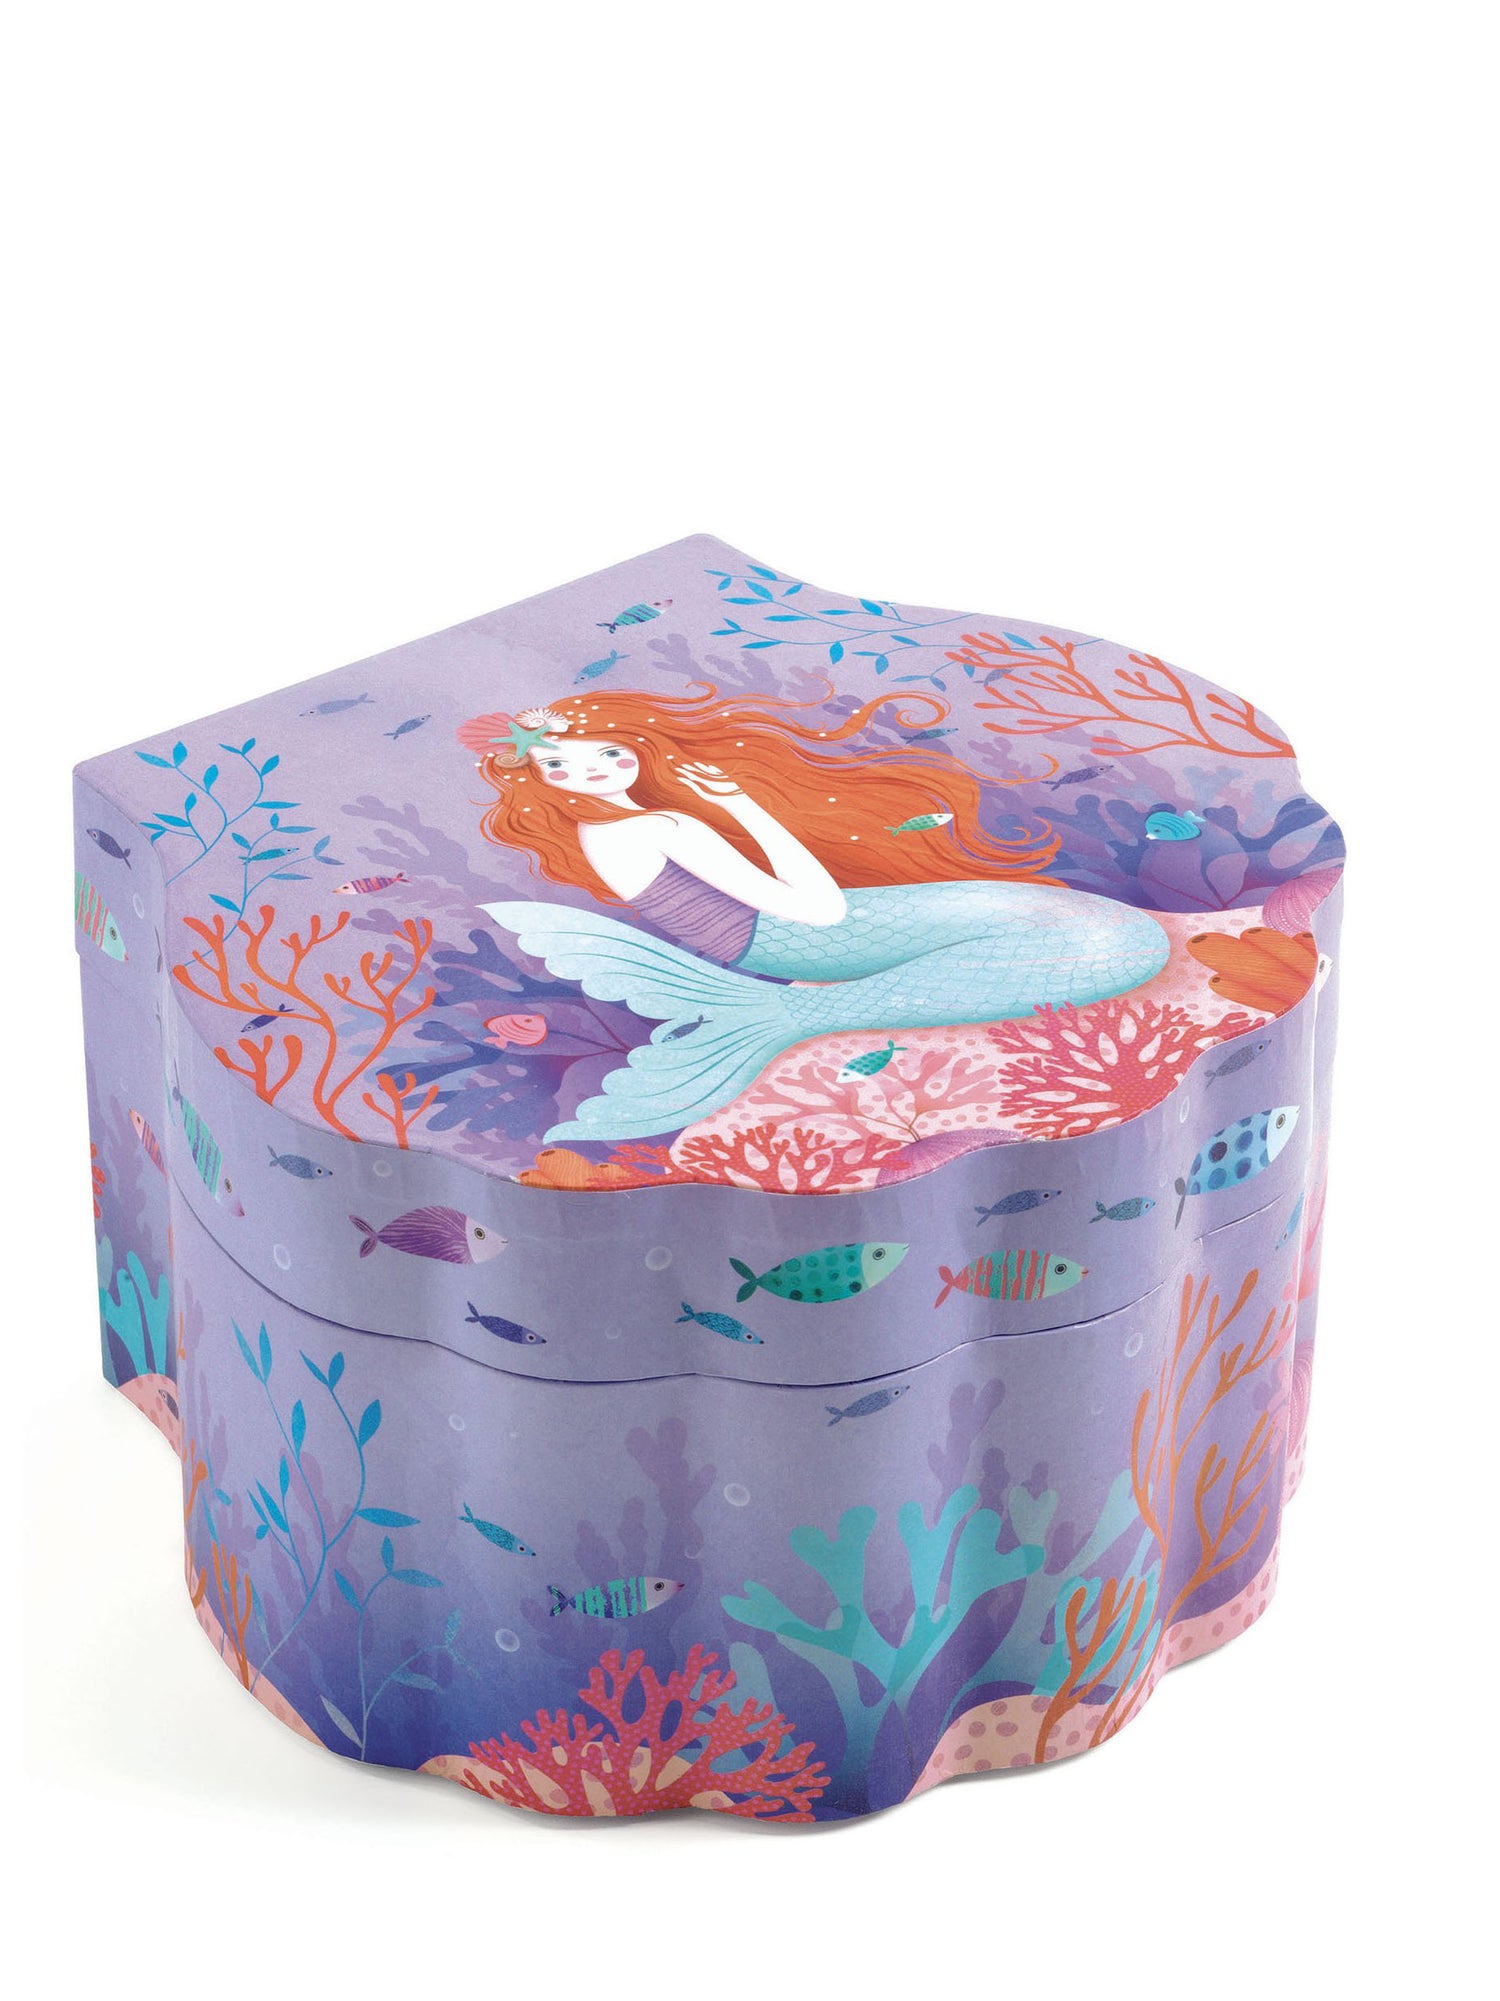 Enchanted mermaid music box